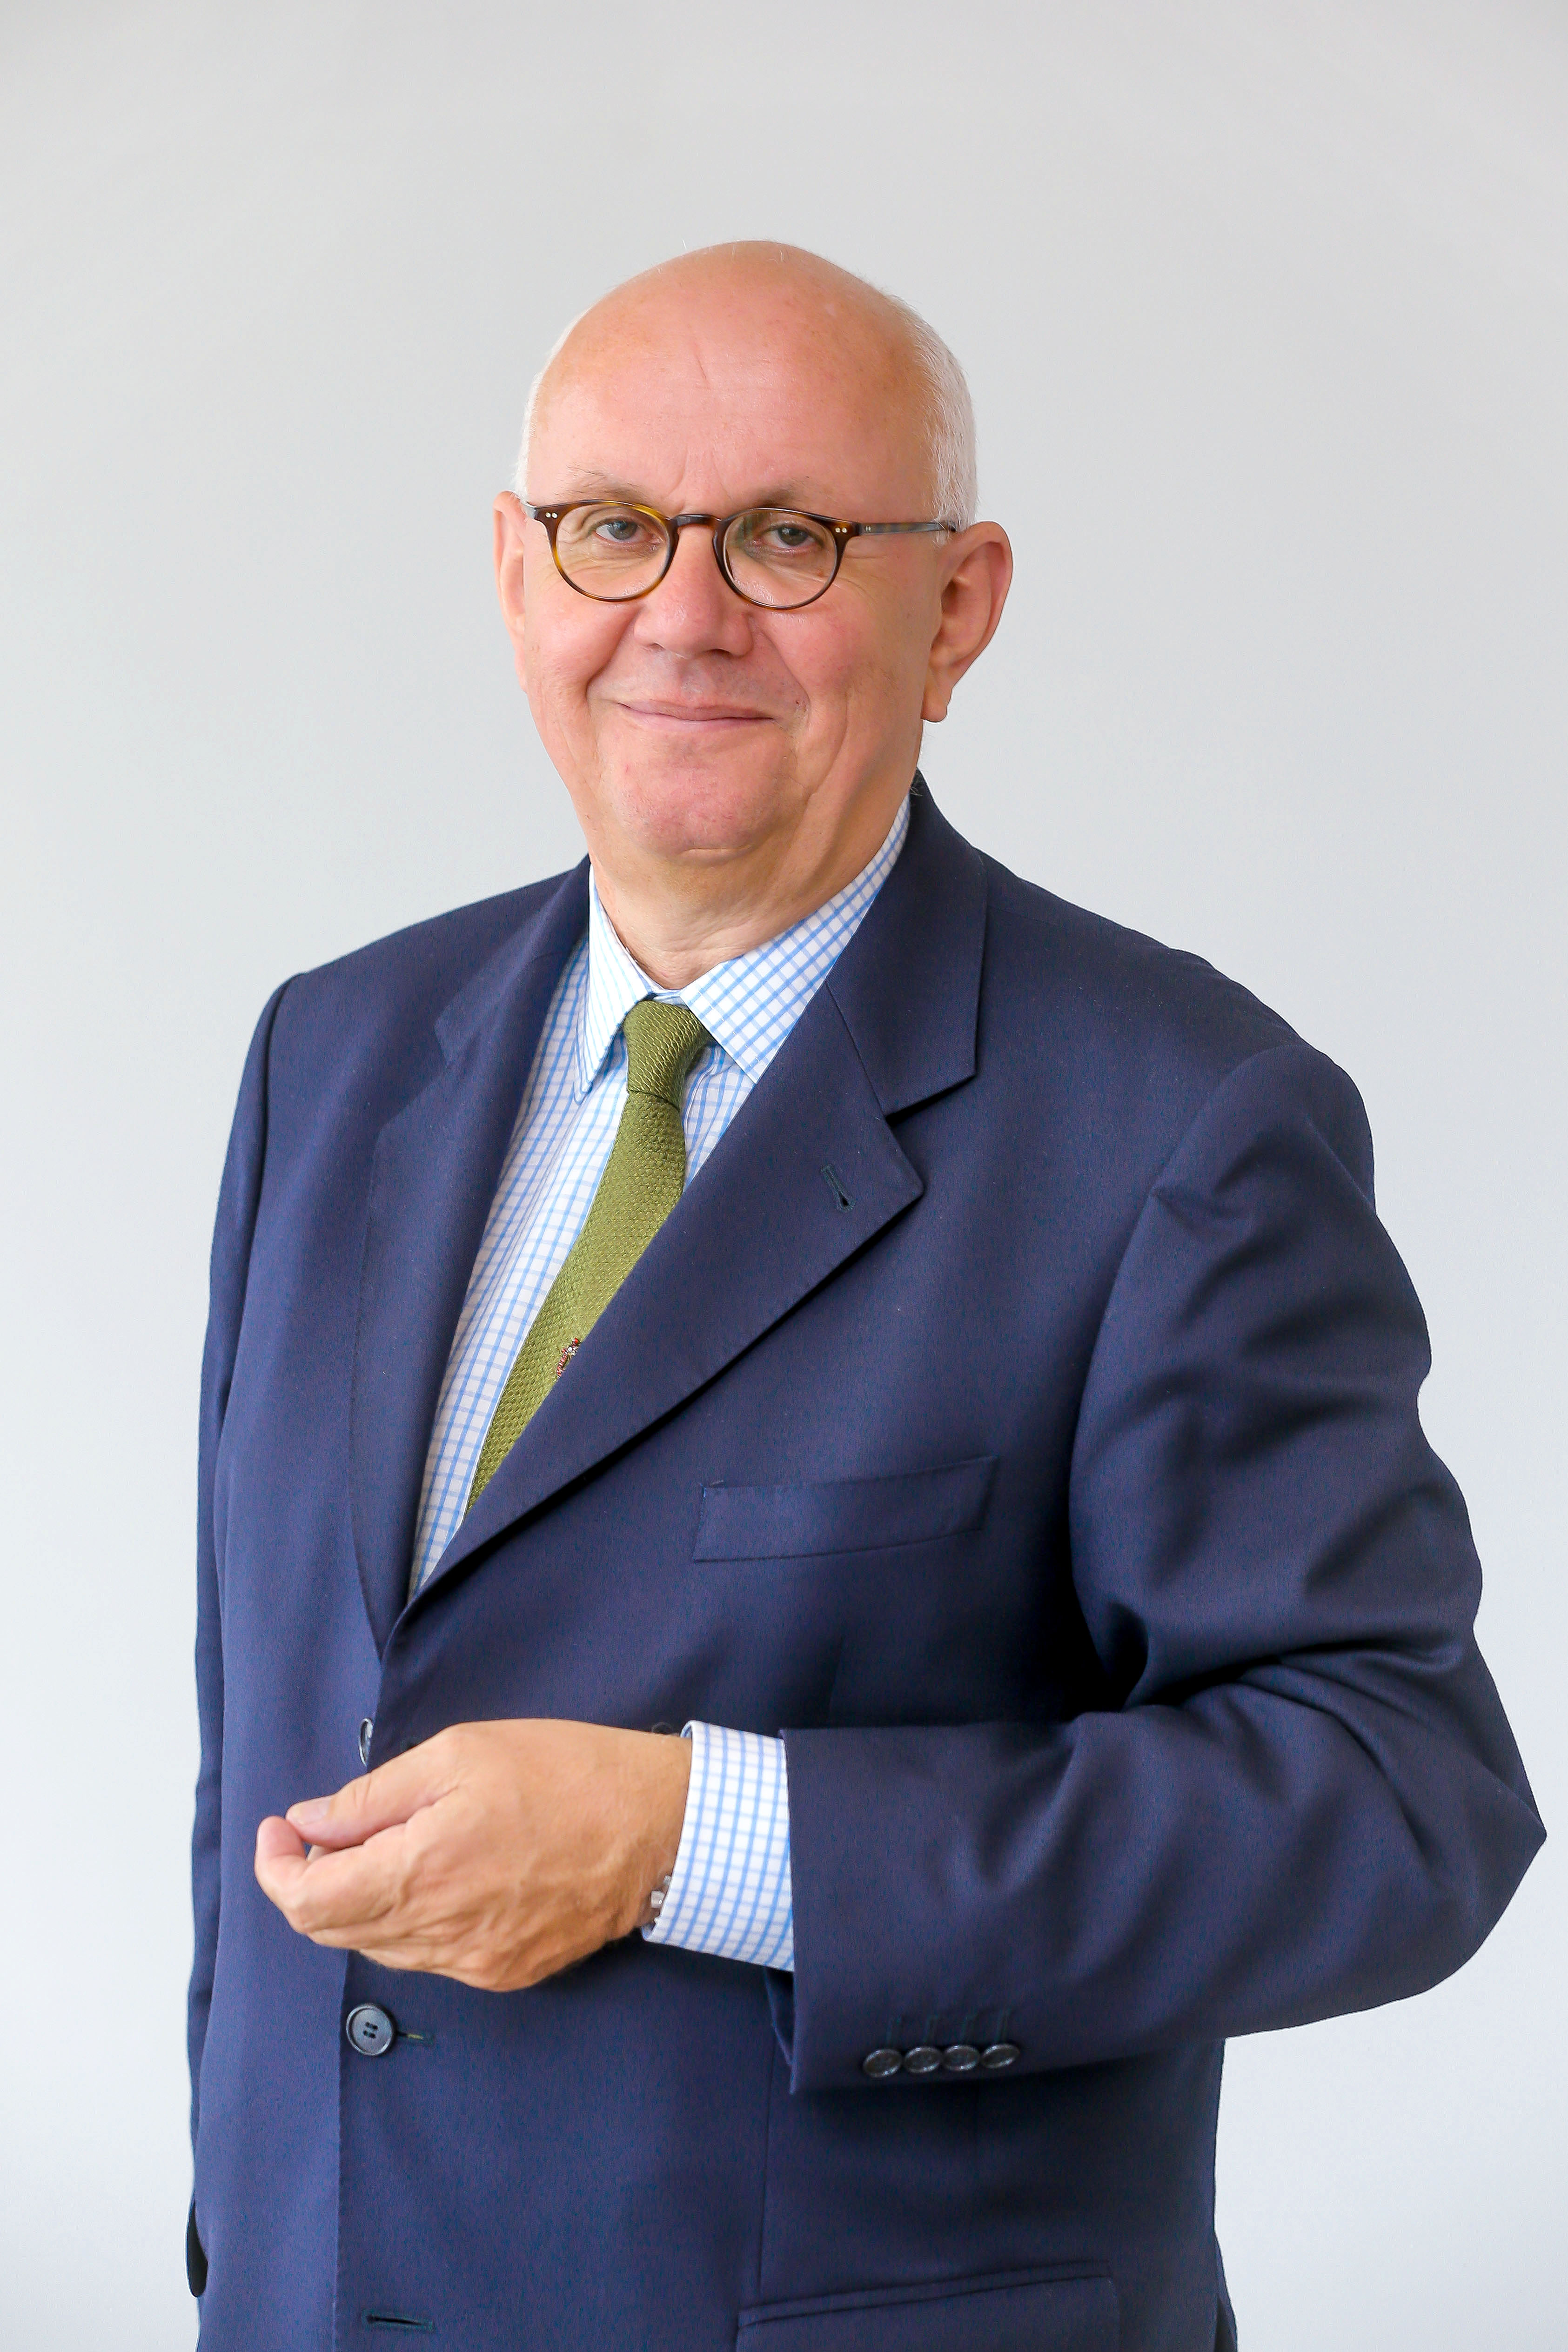 President of the DFG Professor Dr. Peter Strohschneider